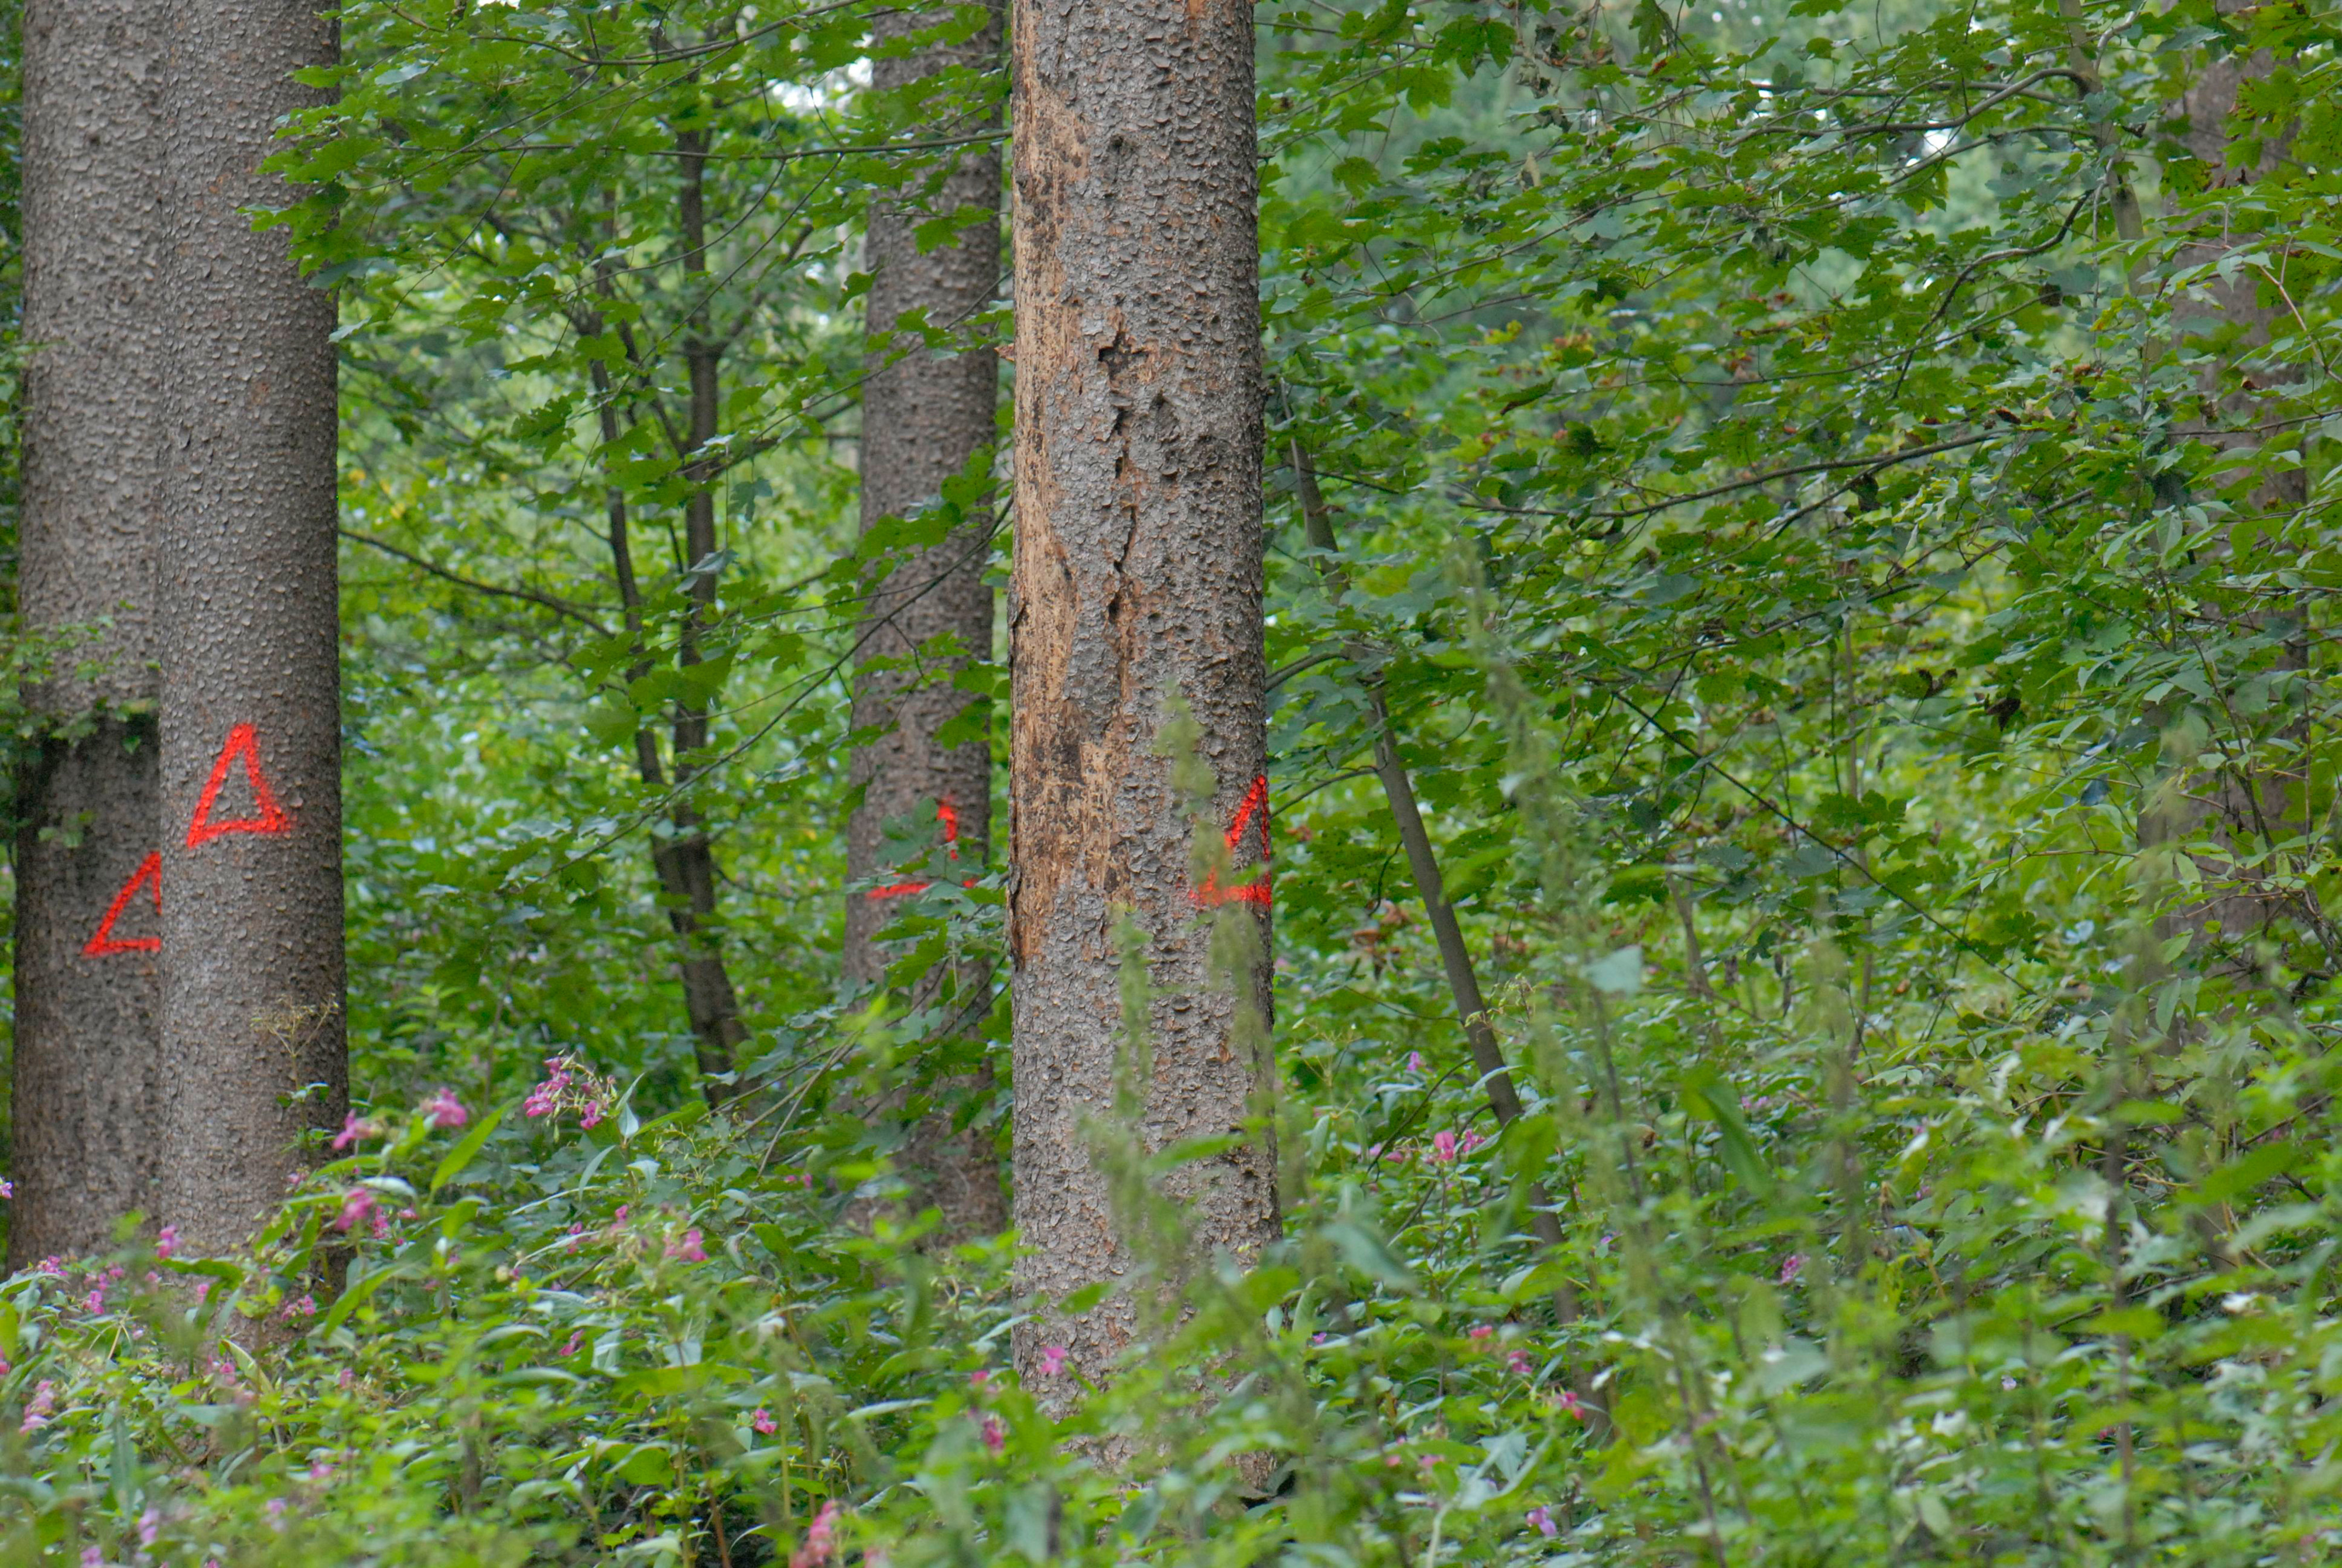 Abfallende Rind bei einer vom Buchdrucker befallenen Fichte; befallene Bäume im Umfeld sind markiert